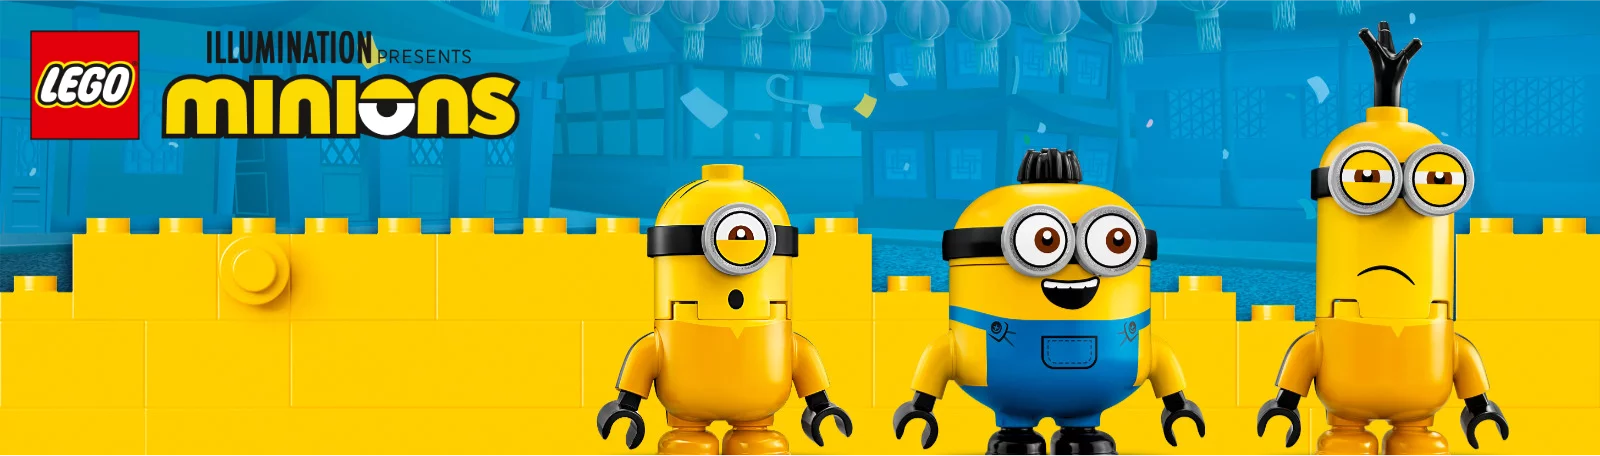 LEGO Minions bei Spielzeugwelten.de